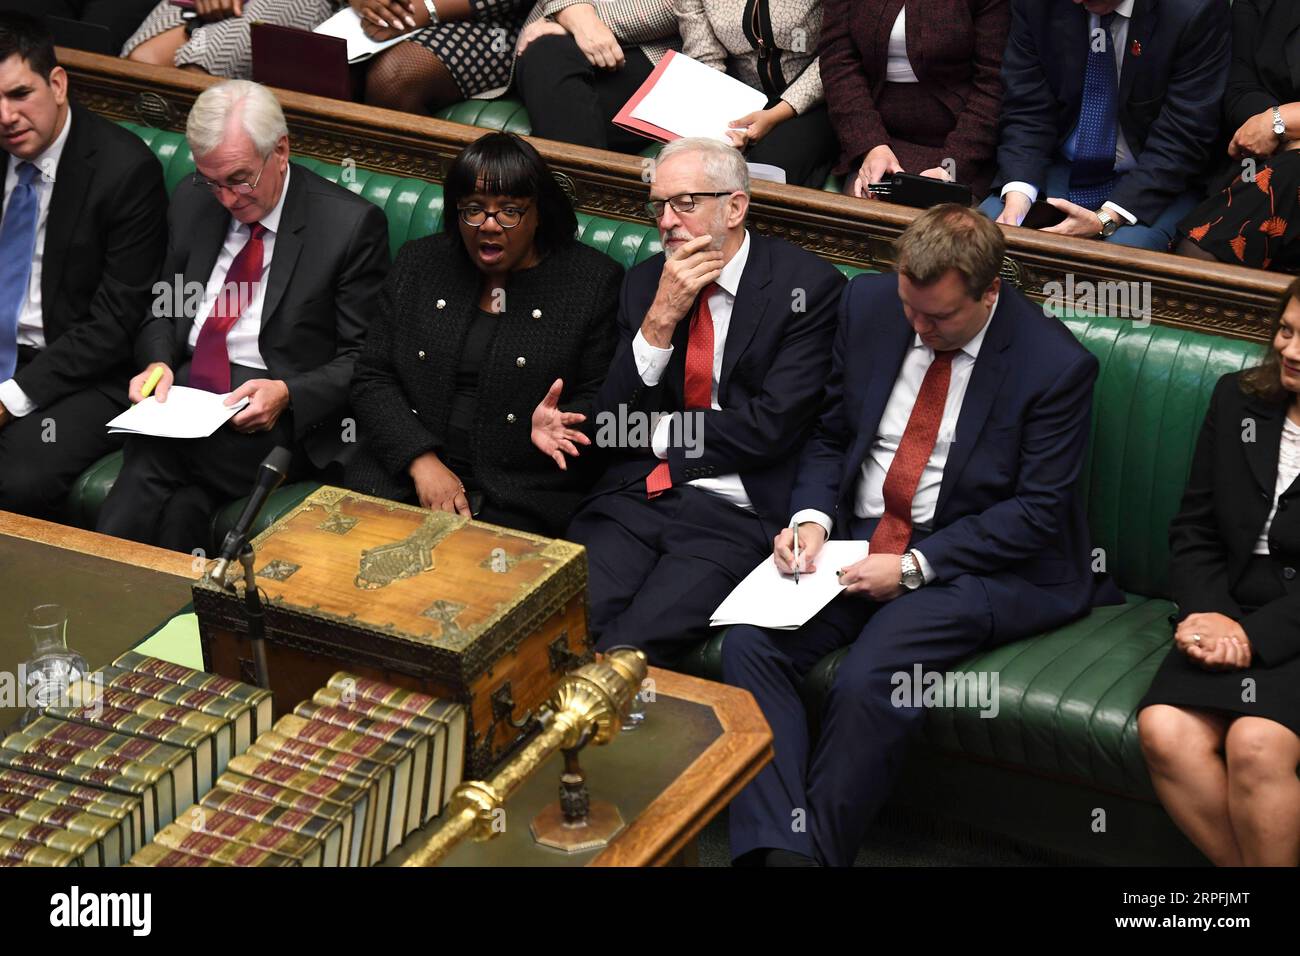 190925 -- LONDRA, 25 settembre 2019 Xinhua -- il leader del partito laburista britannico Jeremy Corbyn 3rd R è stato visto alla camera dei comuni di Londra, in Gran Bretagna, il 25 settembre 2019. Il primo ministro britannico Boris Johnson ha dovuto affrontare enormi pressioni quando il parlamento ha riaperto mercoledì dopo che la Corte Suprema ha stabilito che il suo atto di sospendere il parlamento per cinque settimane era illegale. Jessica Taylor/UK Parliament/Handout via Xinhua HOC CREDITO OBBLIGATORIO: UK Parliament/Jessica Taylor BRITAIN-LONDON-PARLIAMENT-REOPENING PUBLICATIONxNOTxINxCHN Foto Stock